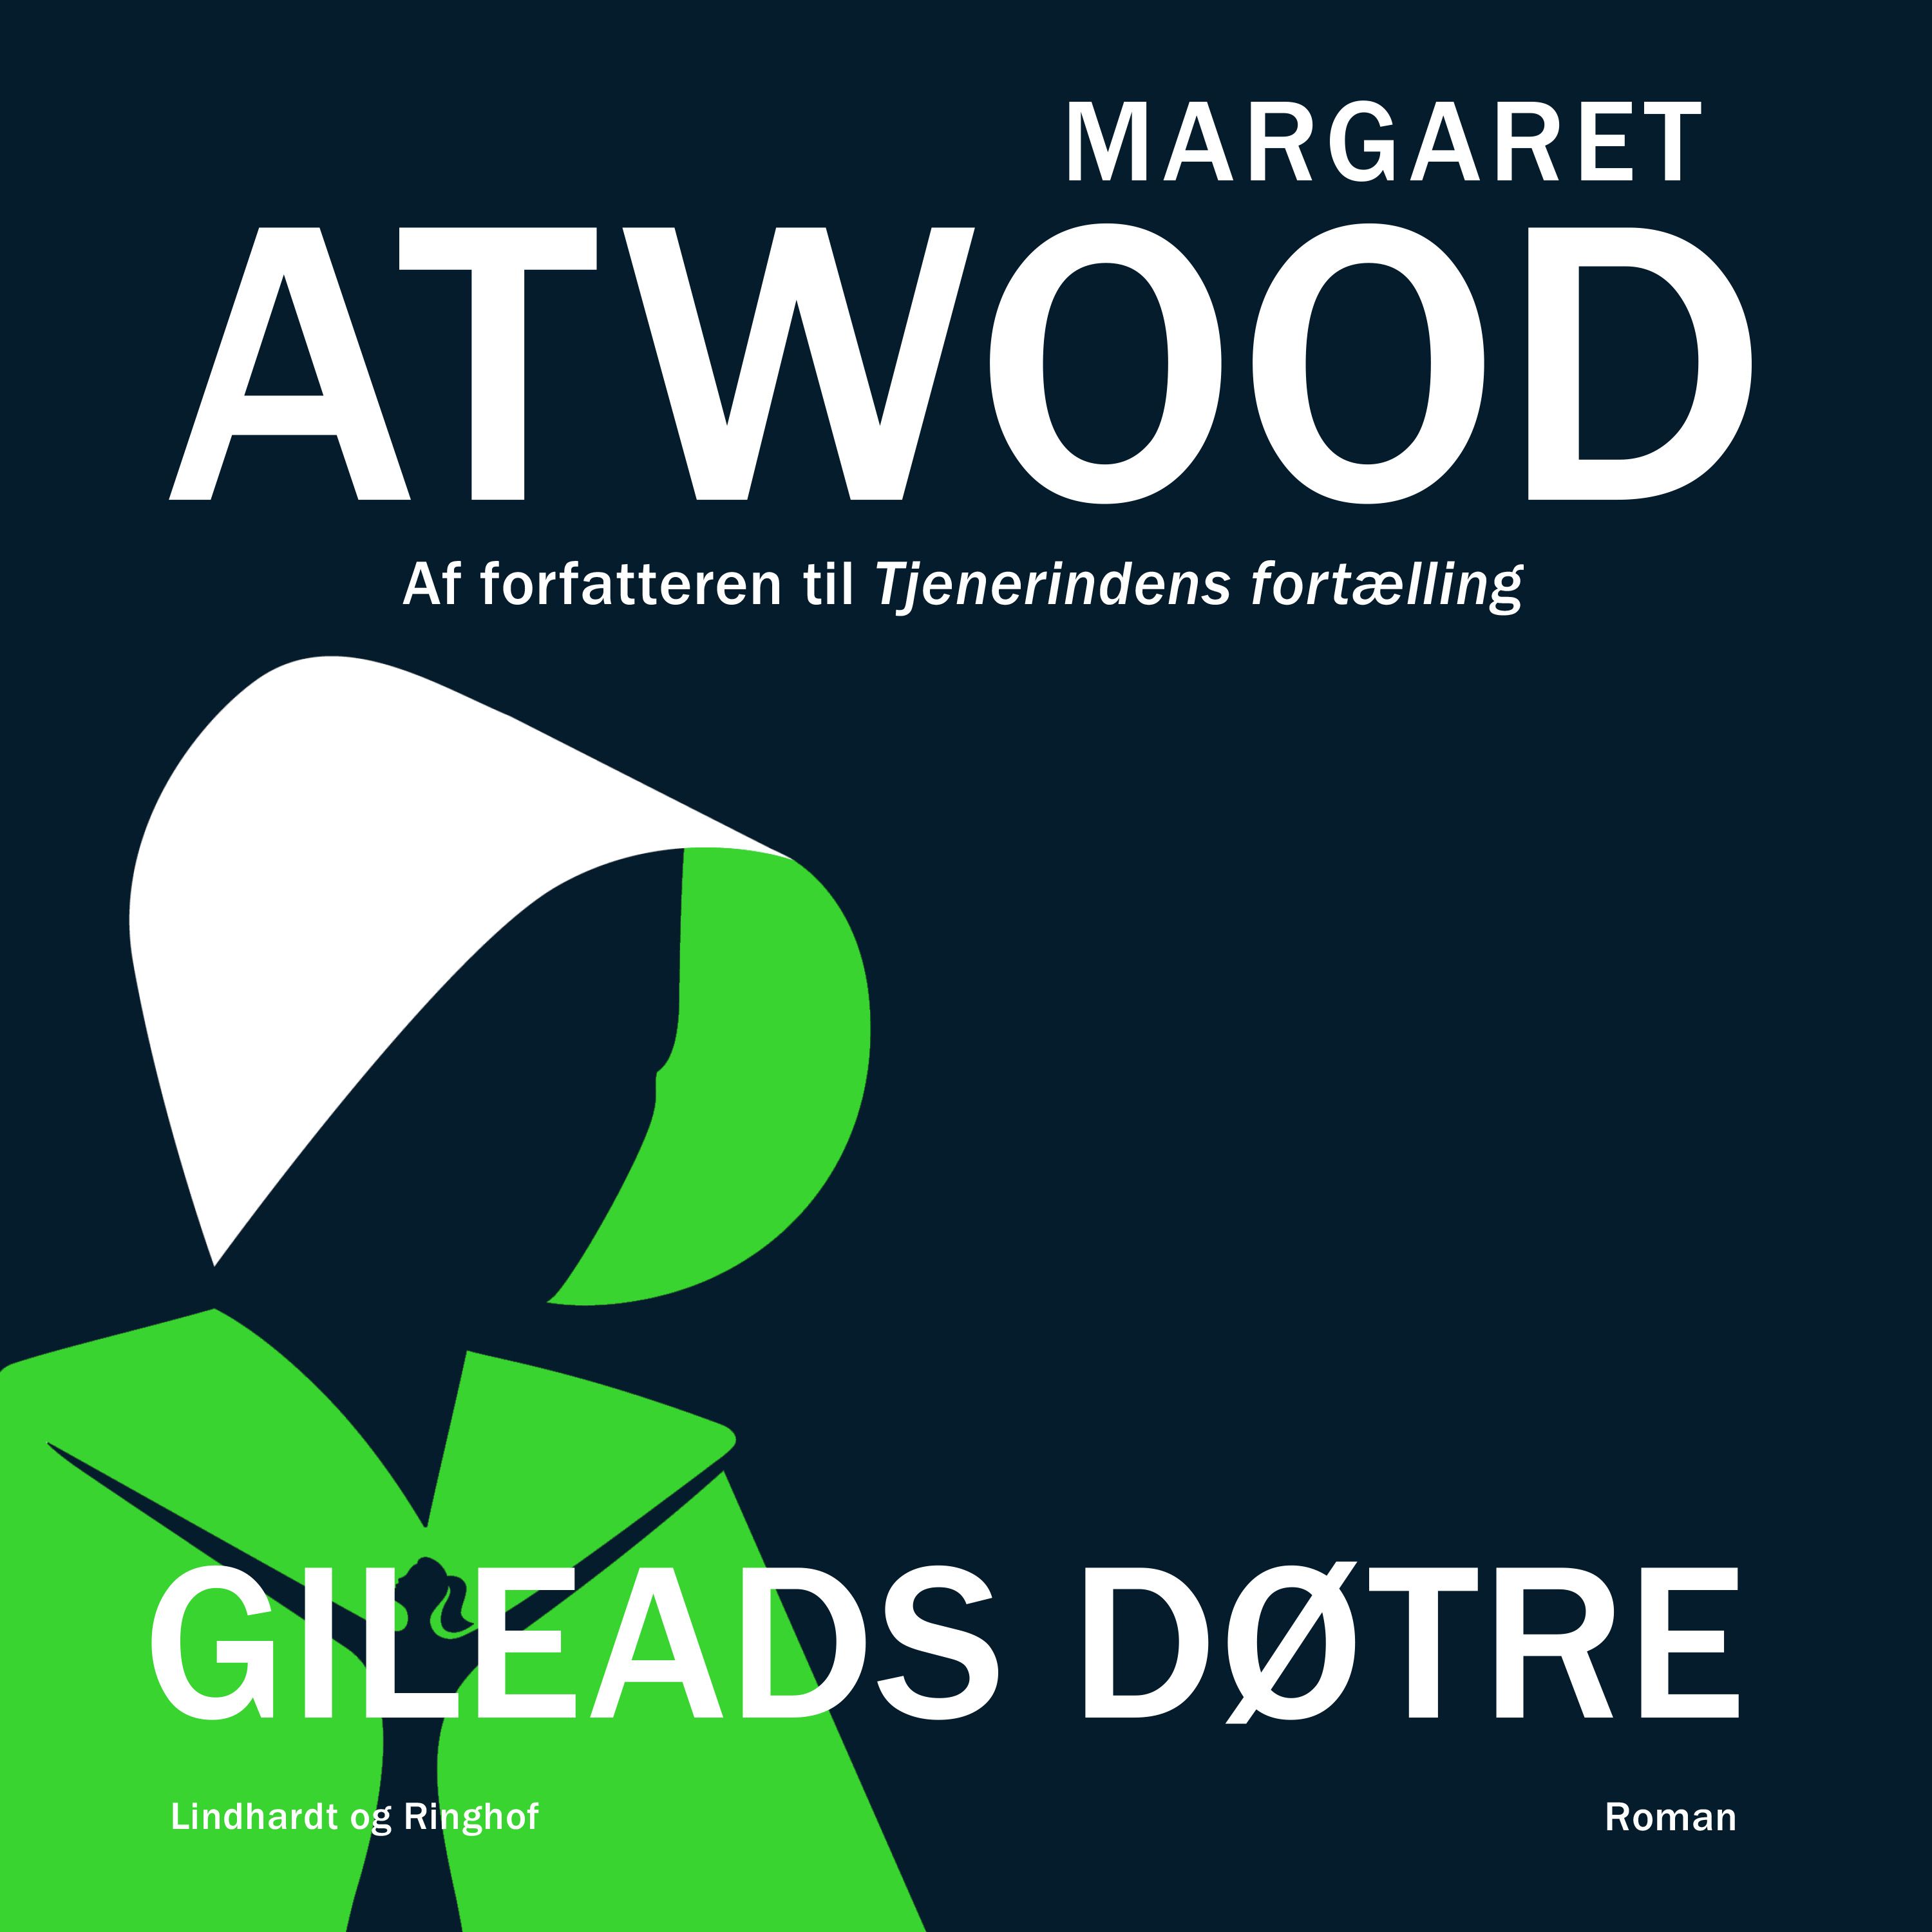 Gileads døtre, ljudbok av Margaret Atwood